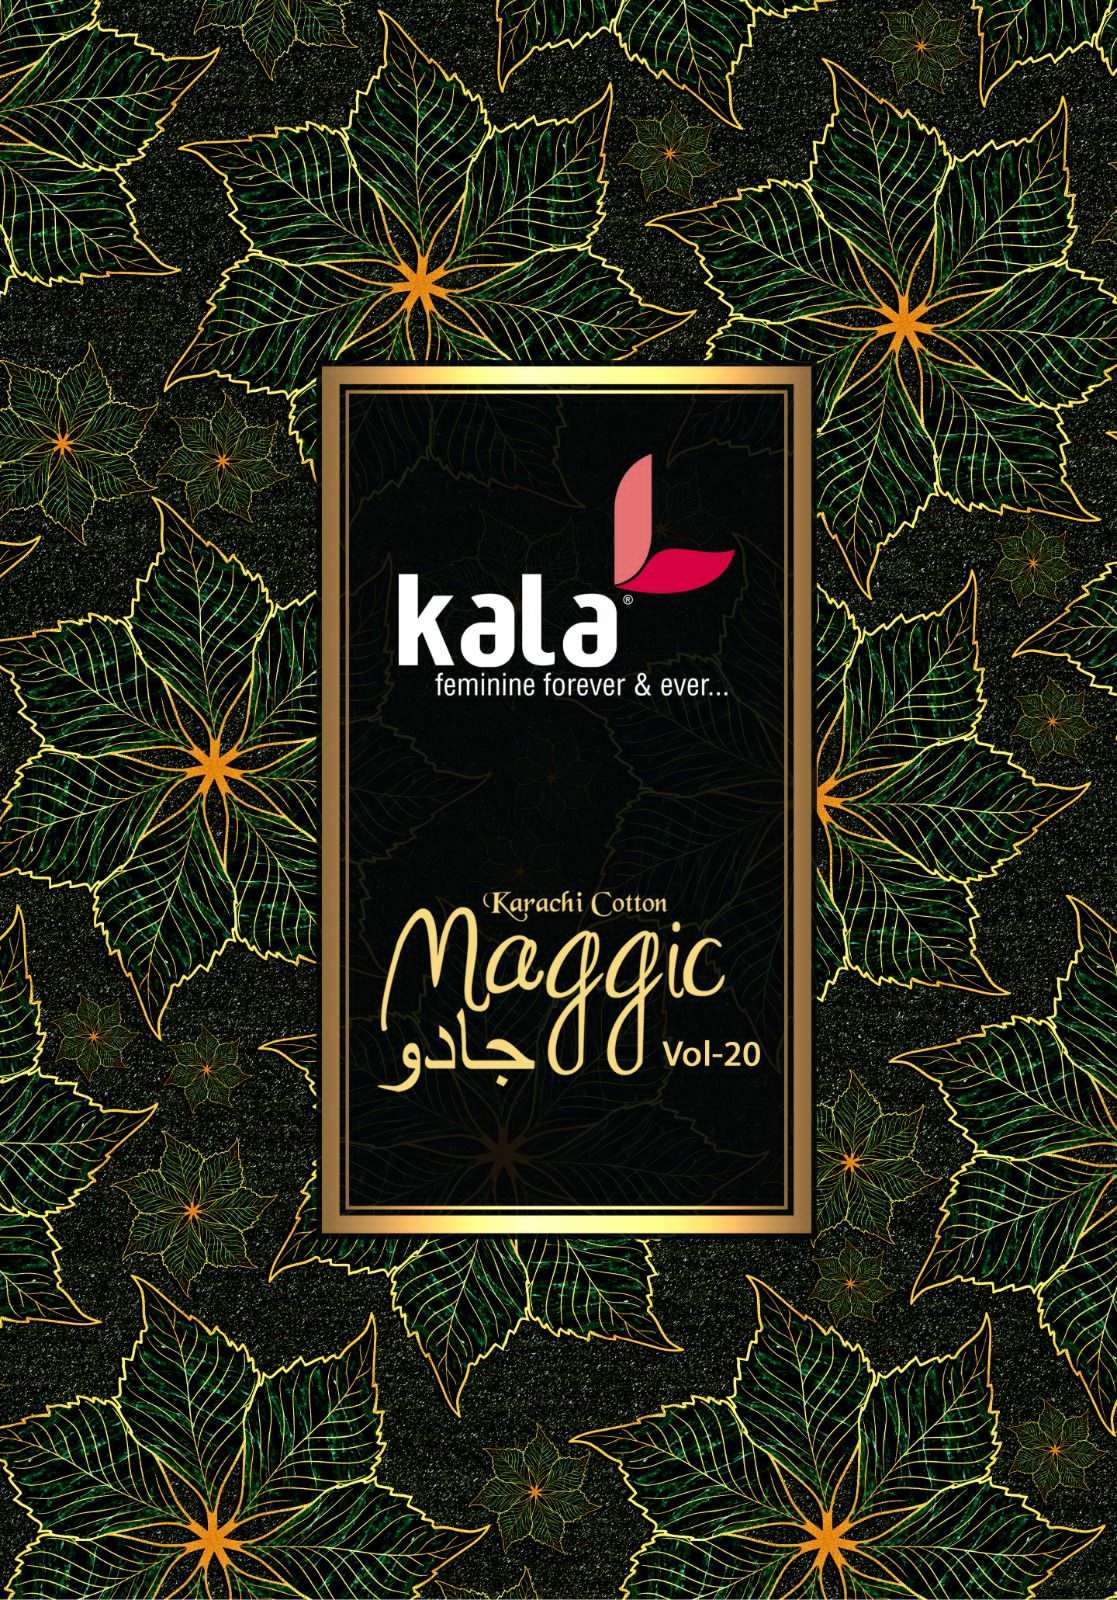 tarika kala magic vol 20 4901-4912 series designer latest pakistani salwar kameez wholesaler surat gujarat